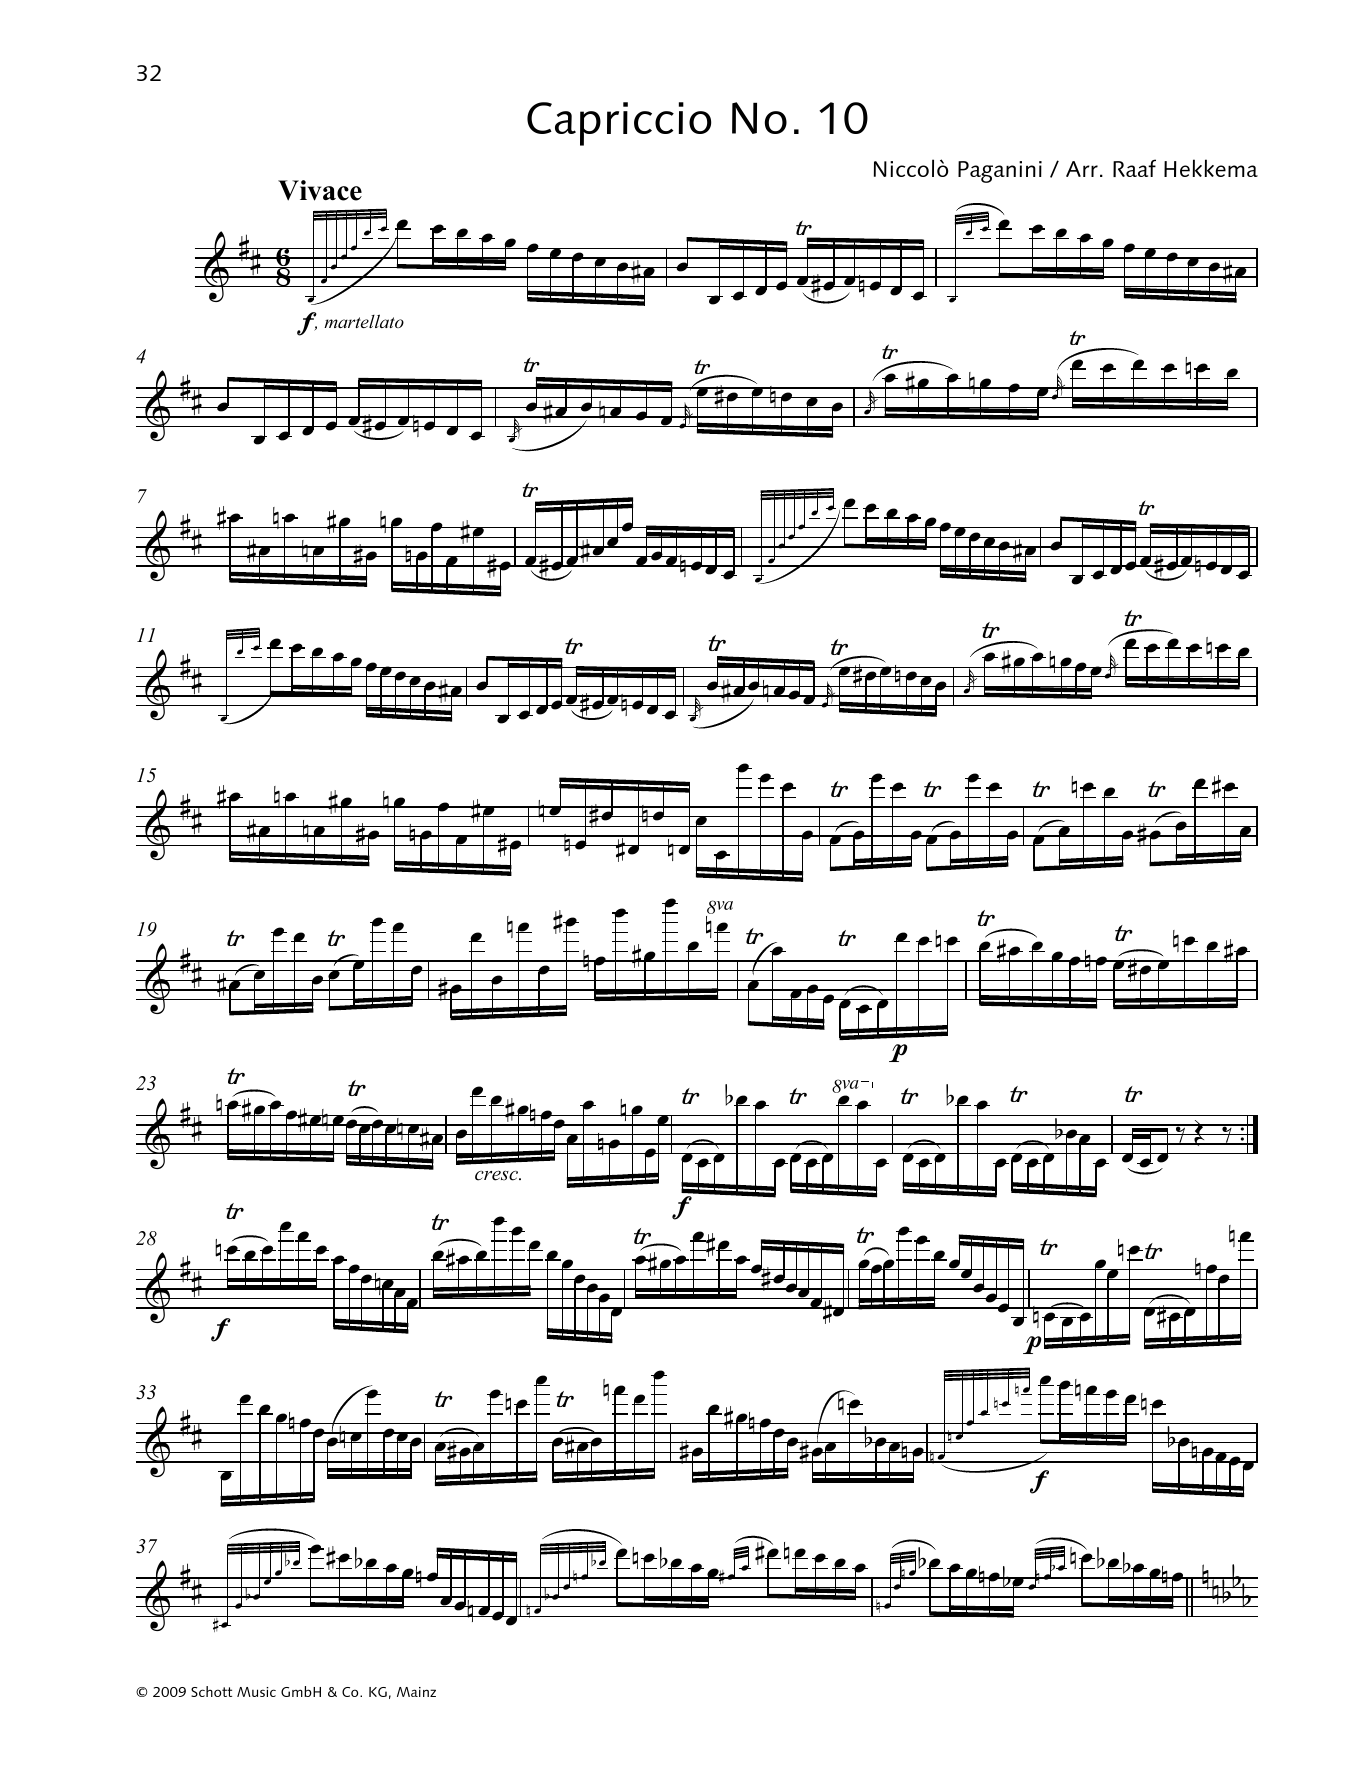 Download Niccolo Paganini Capriccio No. 10 Sheet Music